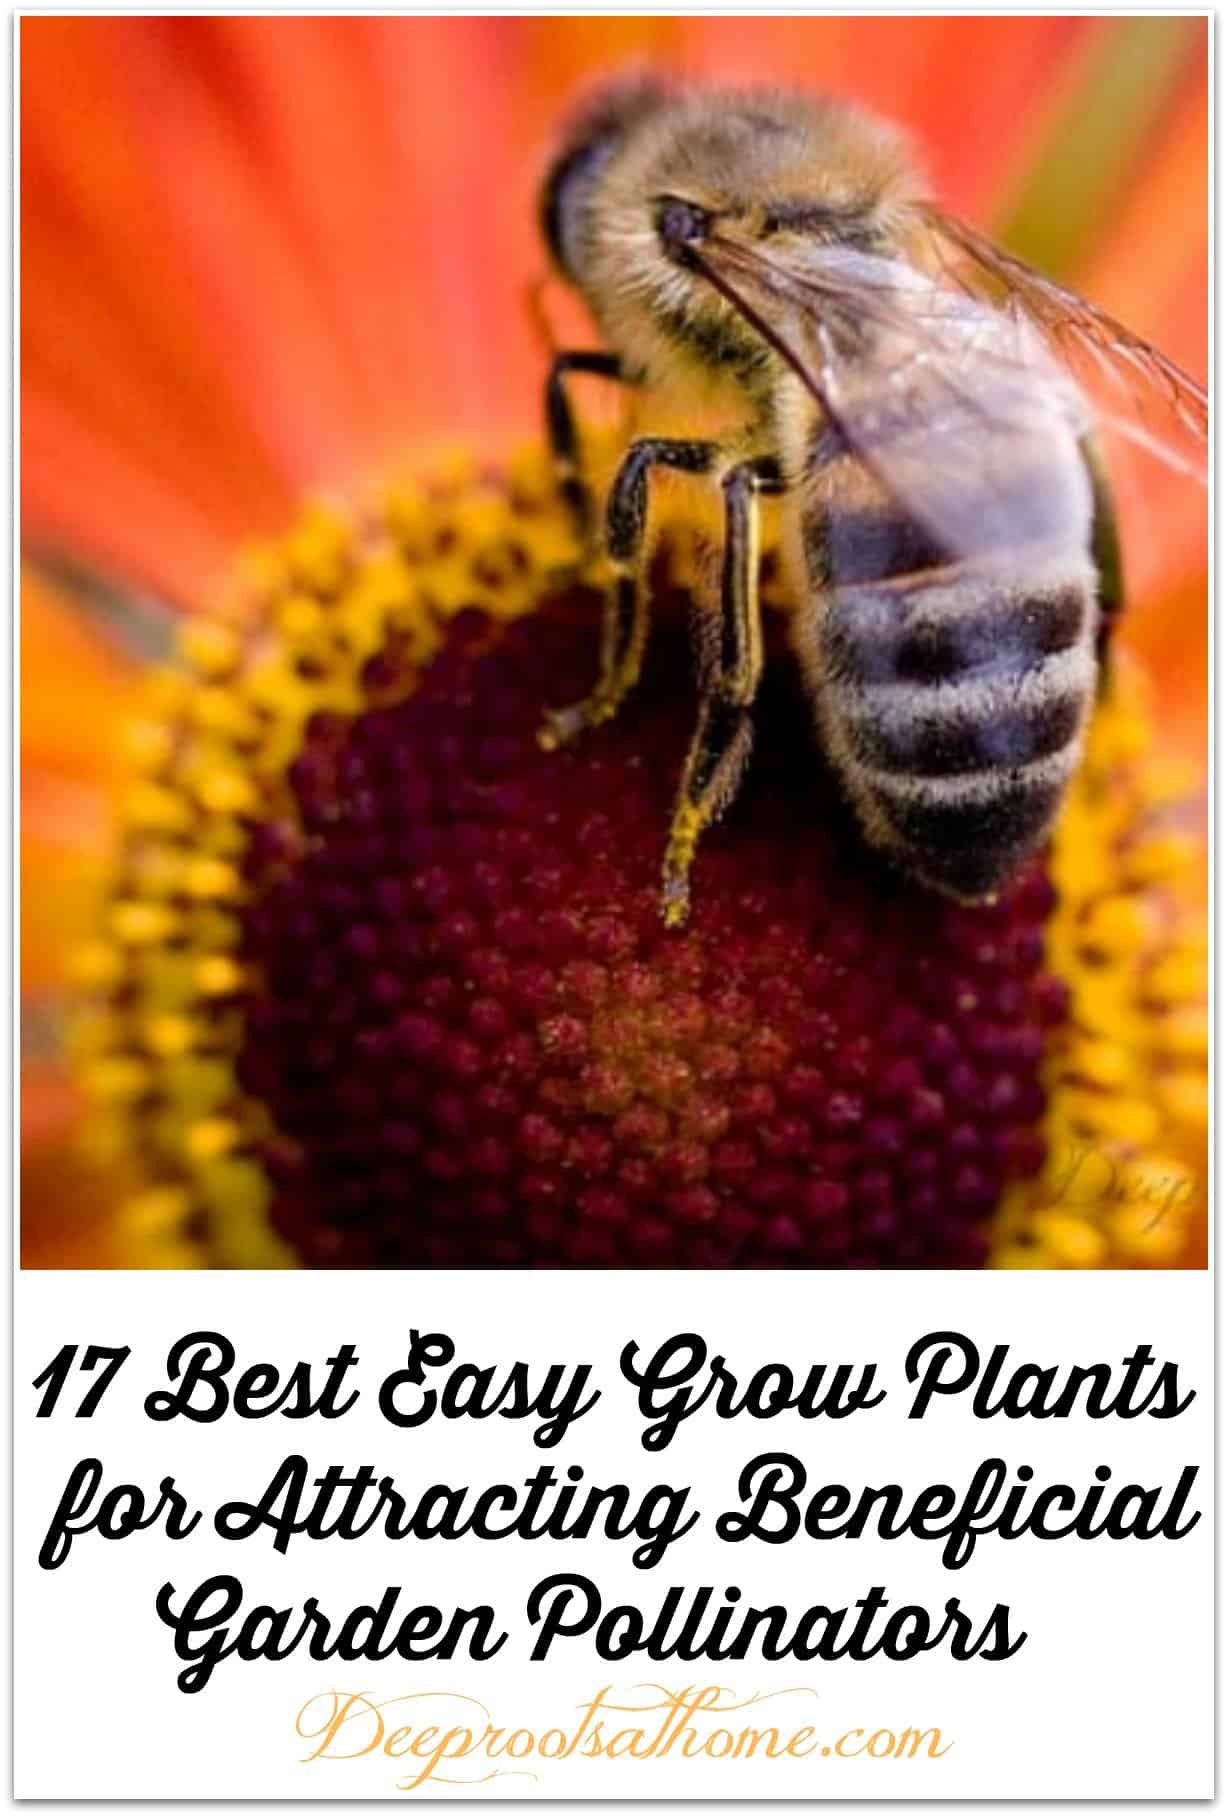 17 Best Easy Grow Plants for Attracting Beneficial Garden Pollinators. A honeybee on an orange coneflower